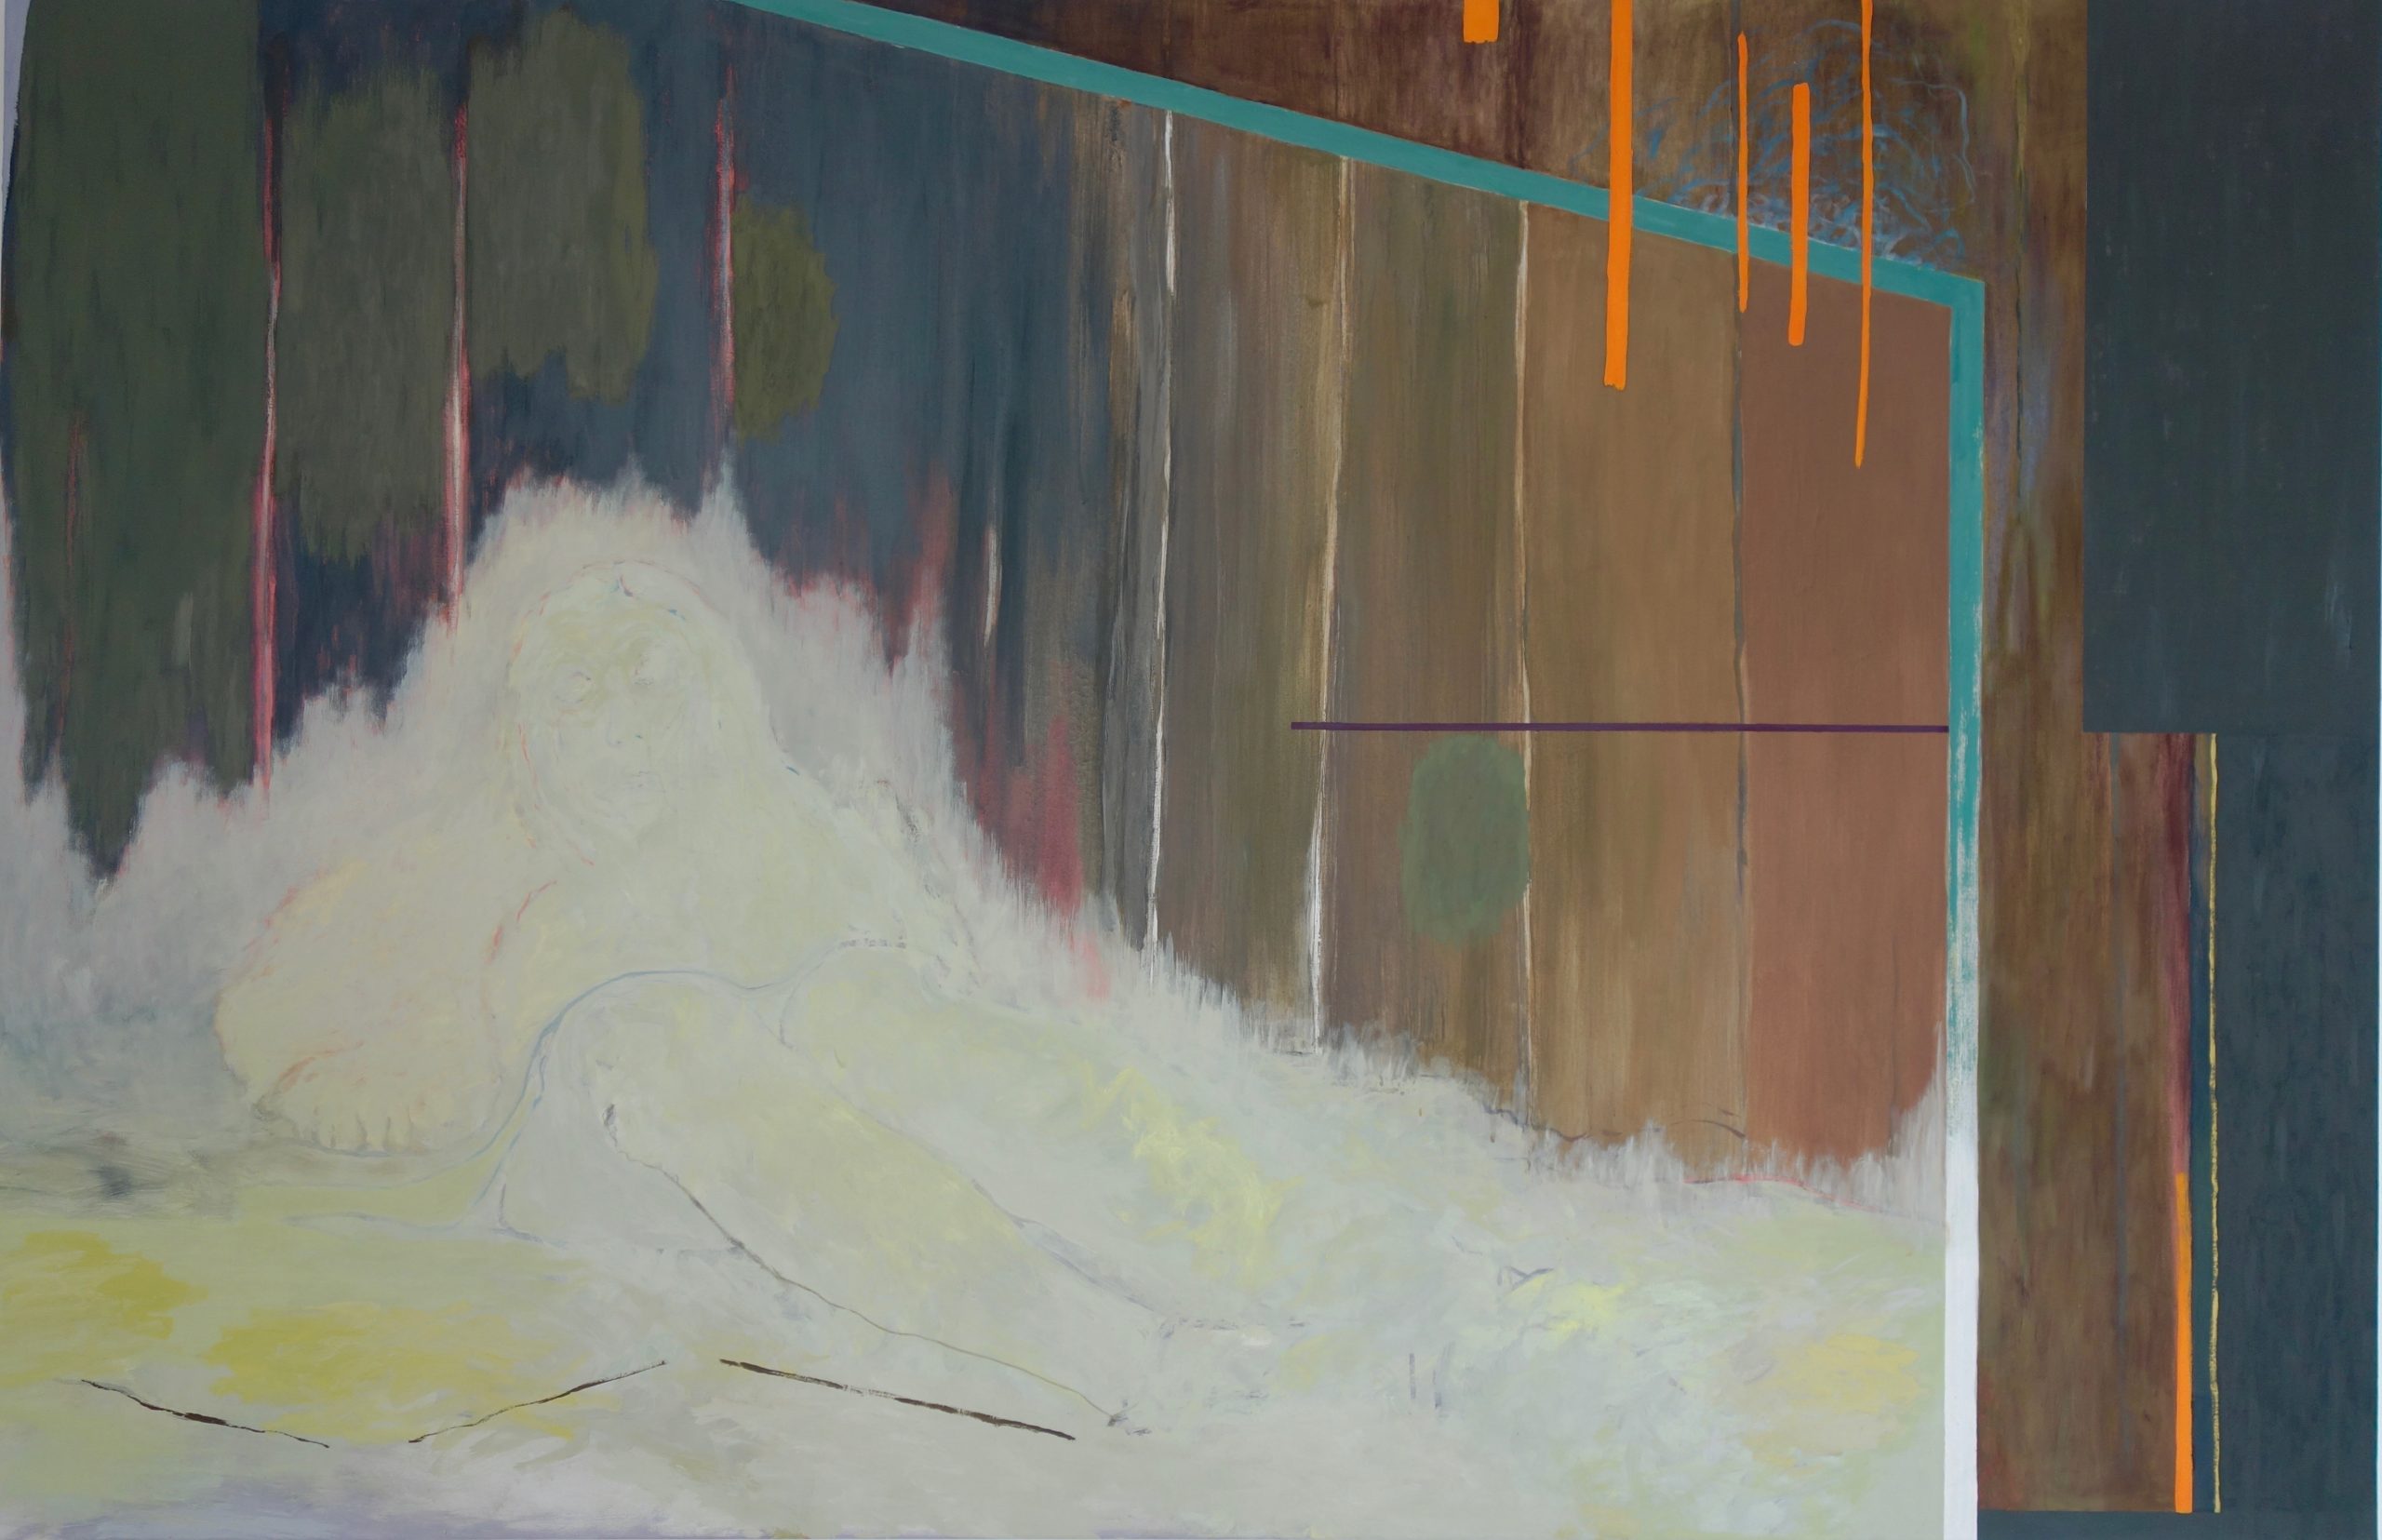 Acryl, Eiöltempera und Öl auf Baumwollstoff, 130 x 200 cm, 2019